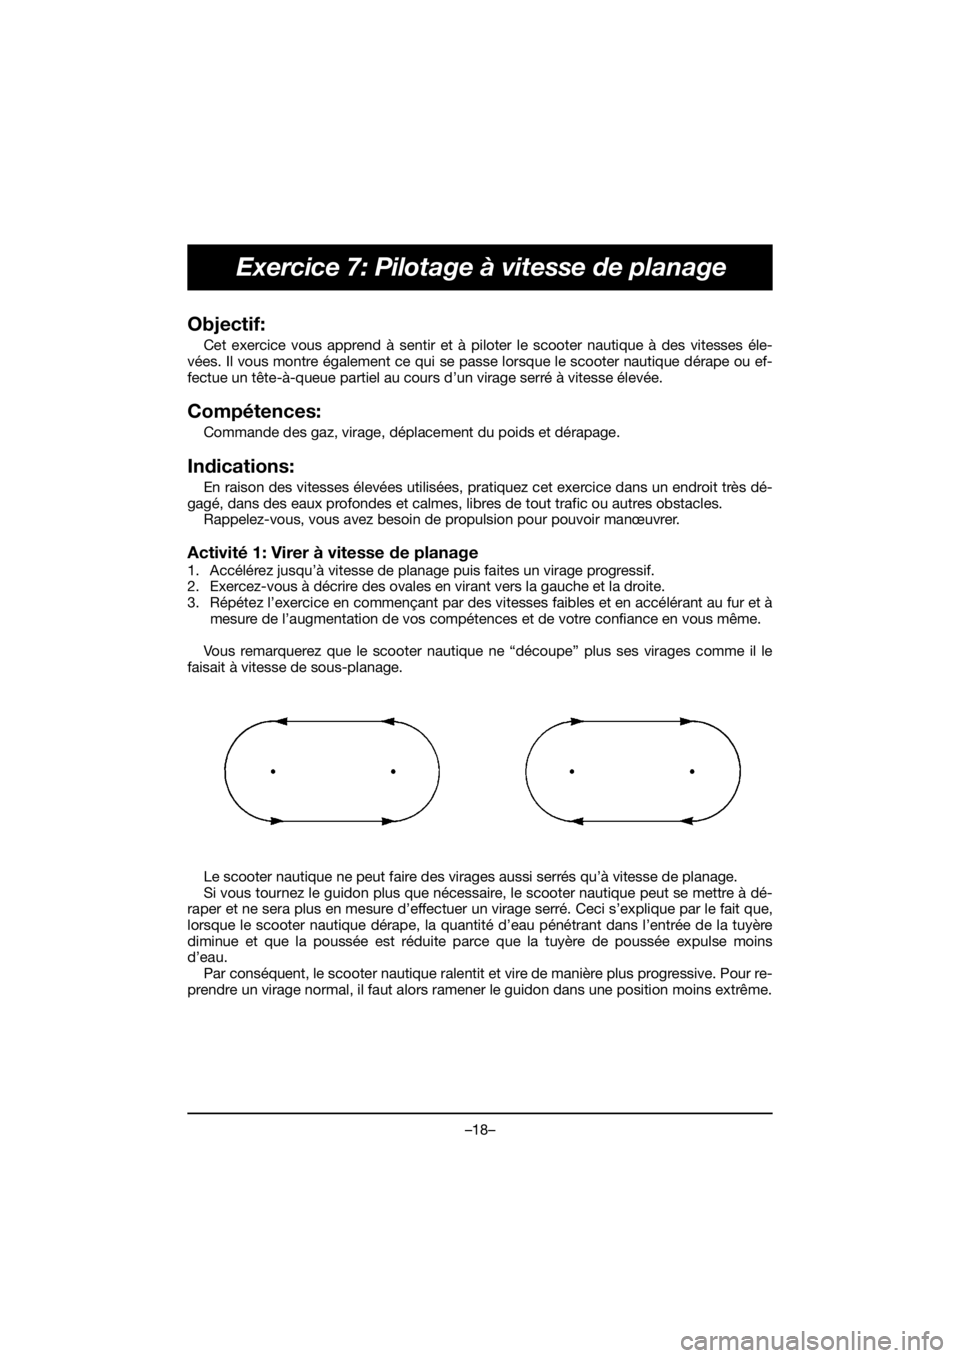 YAMAHA EX 2020  Manual de utilização (in Portuguese) –18–
Exercice 7: Pilotage à vitesse de planage
Objectif: 
Cet exercice vous apprend à sentir et à piloter le scooter nautique à des vitesses éle-
vées. Il vous montre également ce qui se pa